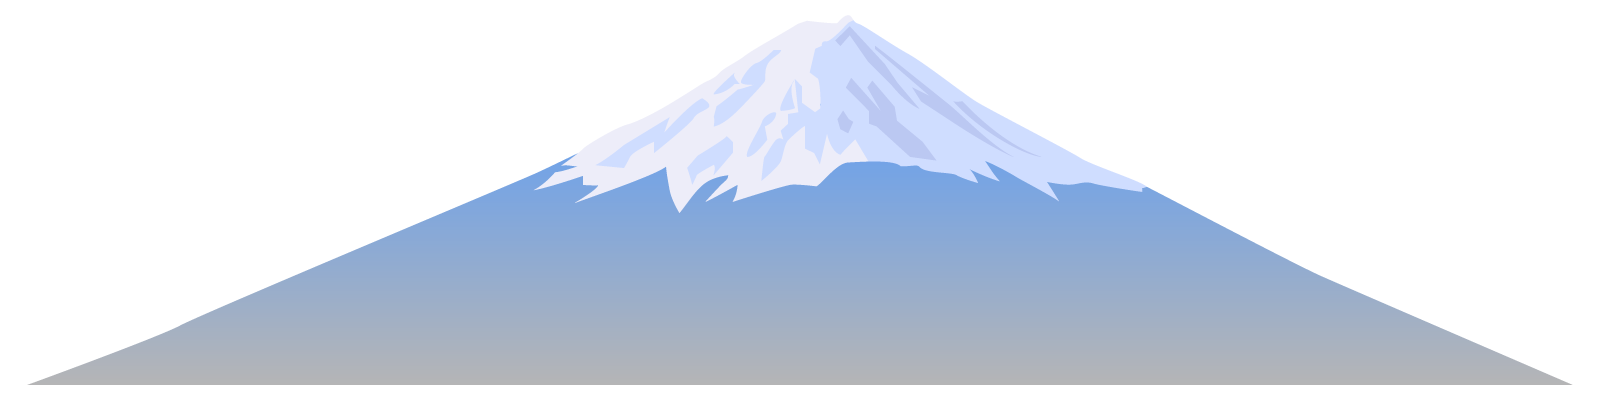 お正月・富士山の無料イラスト1-1